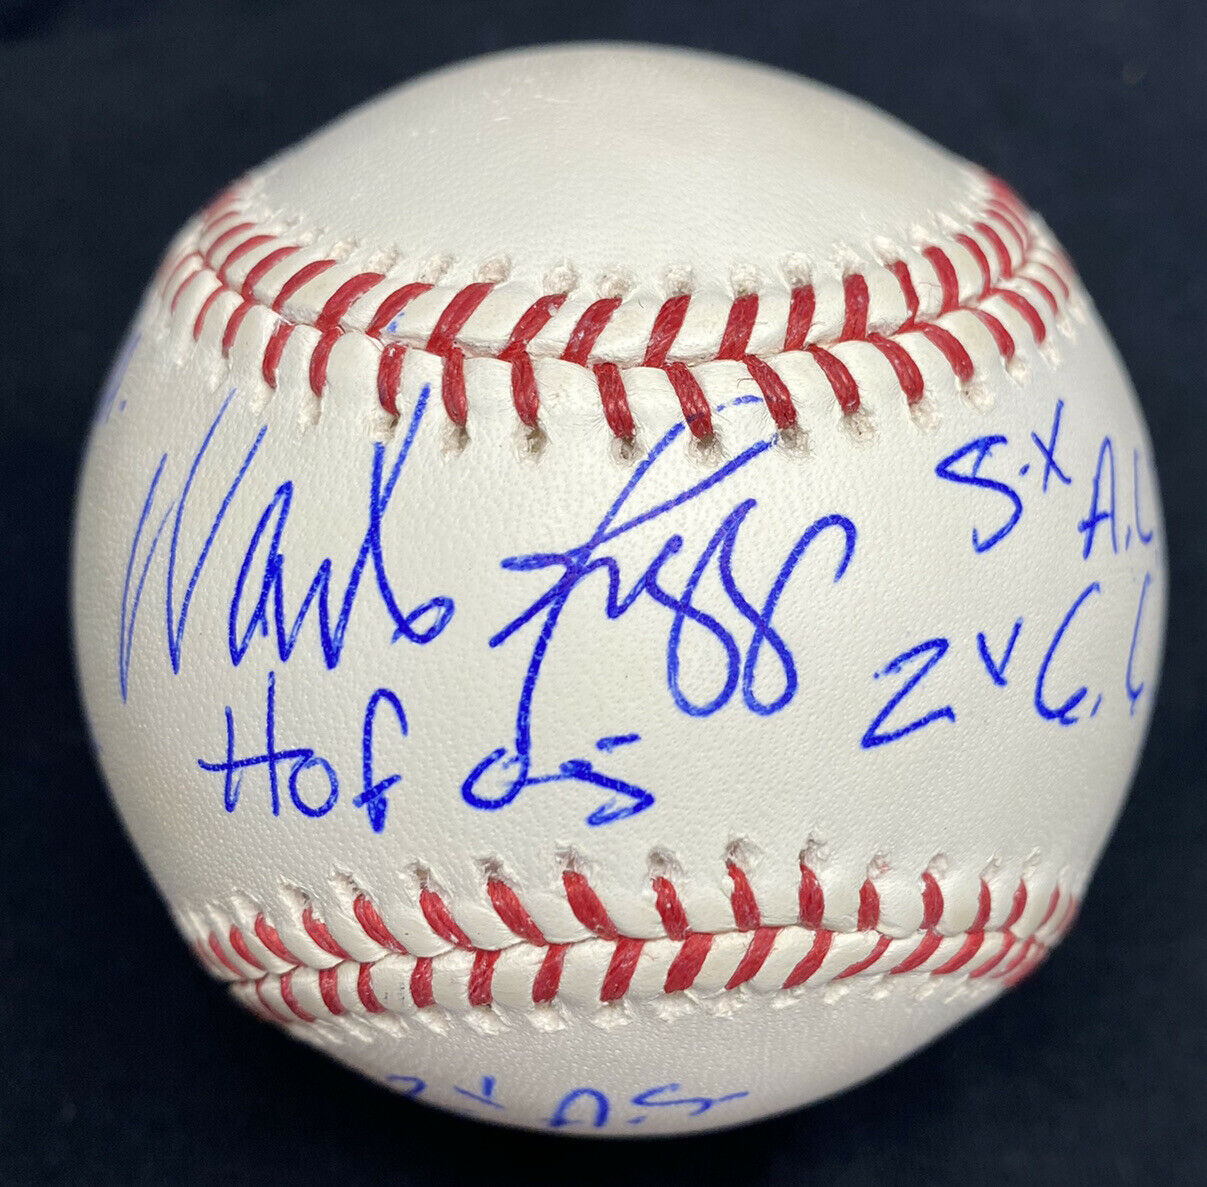 Wade Boggs HOF 05 Hits Signed Stat Baseball PSA/DNA Hologram Only